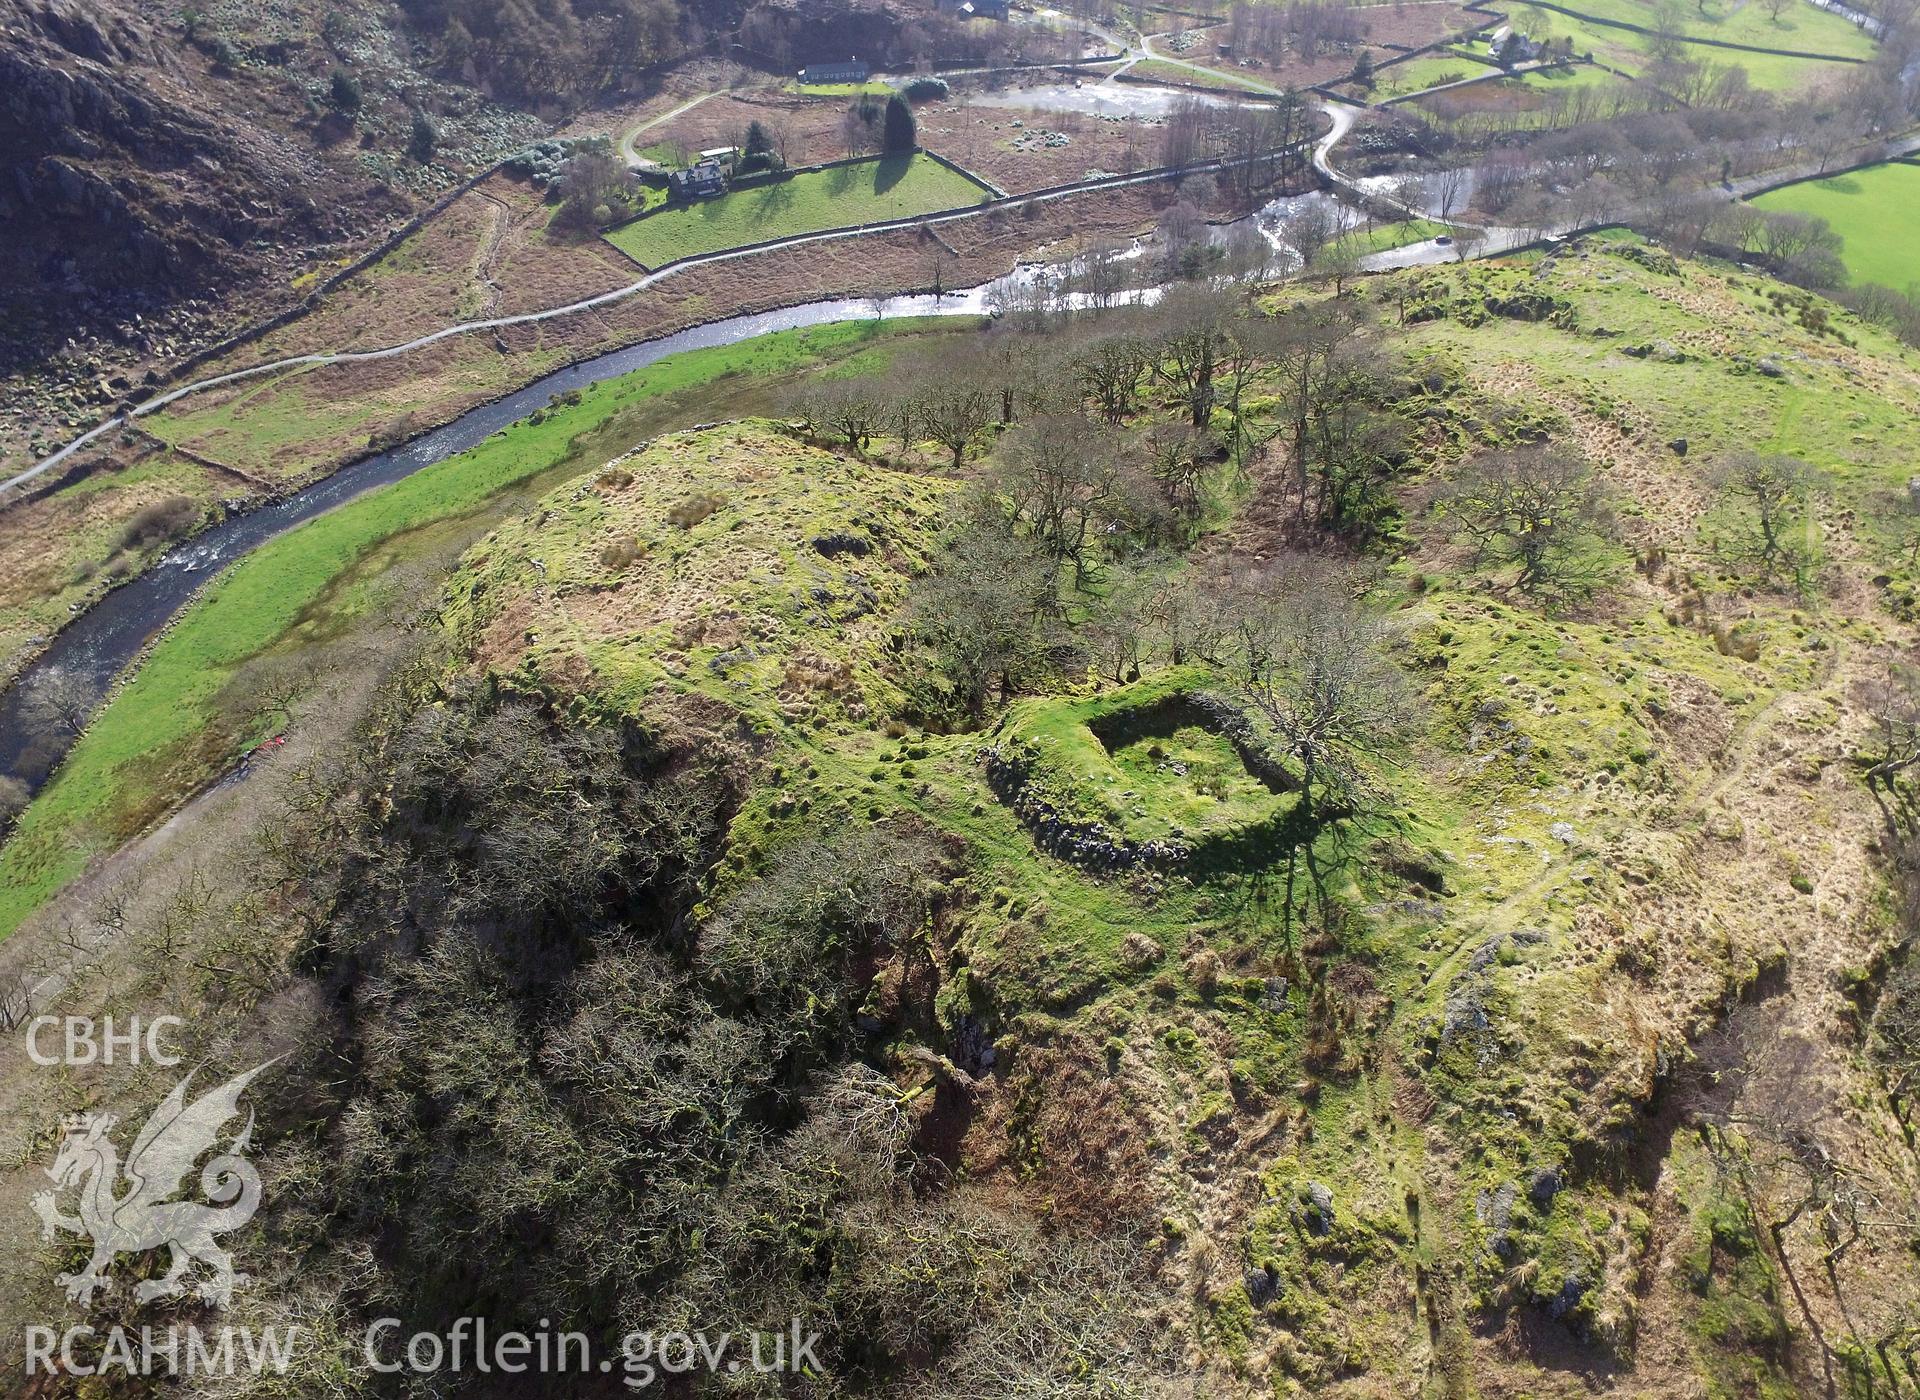 Colour photo showing Dinas Emrys Castle, produced by Paul R. Davis, 15th March 2017.